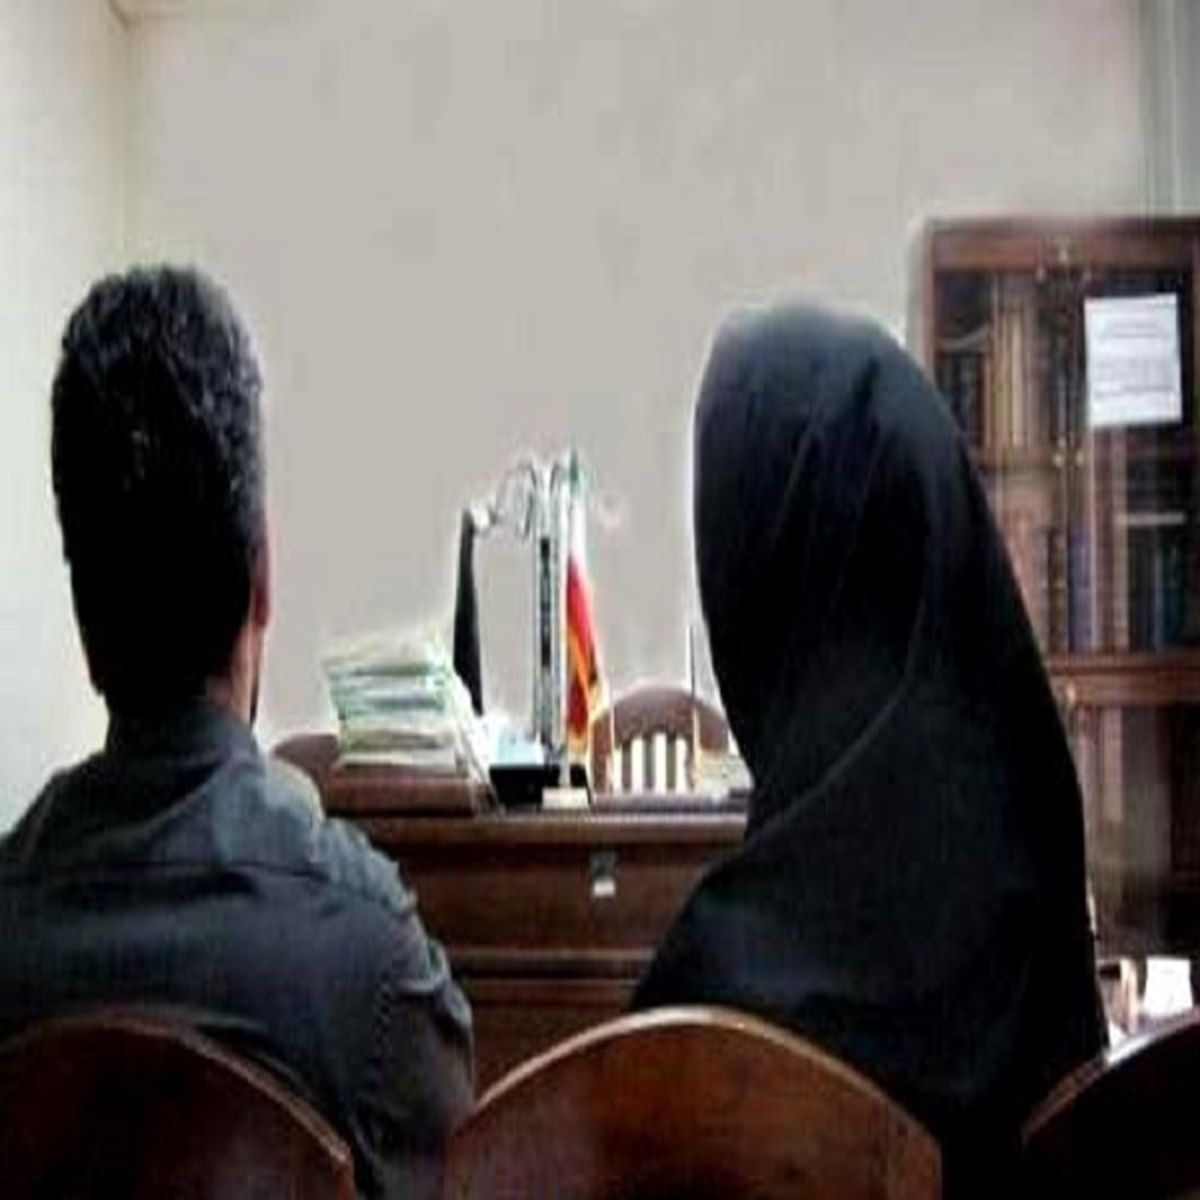  روایت عجیب از جدال یک زوج جوان در دادگاه خانواده 